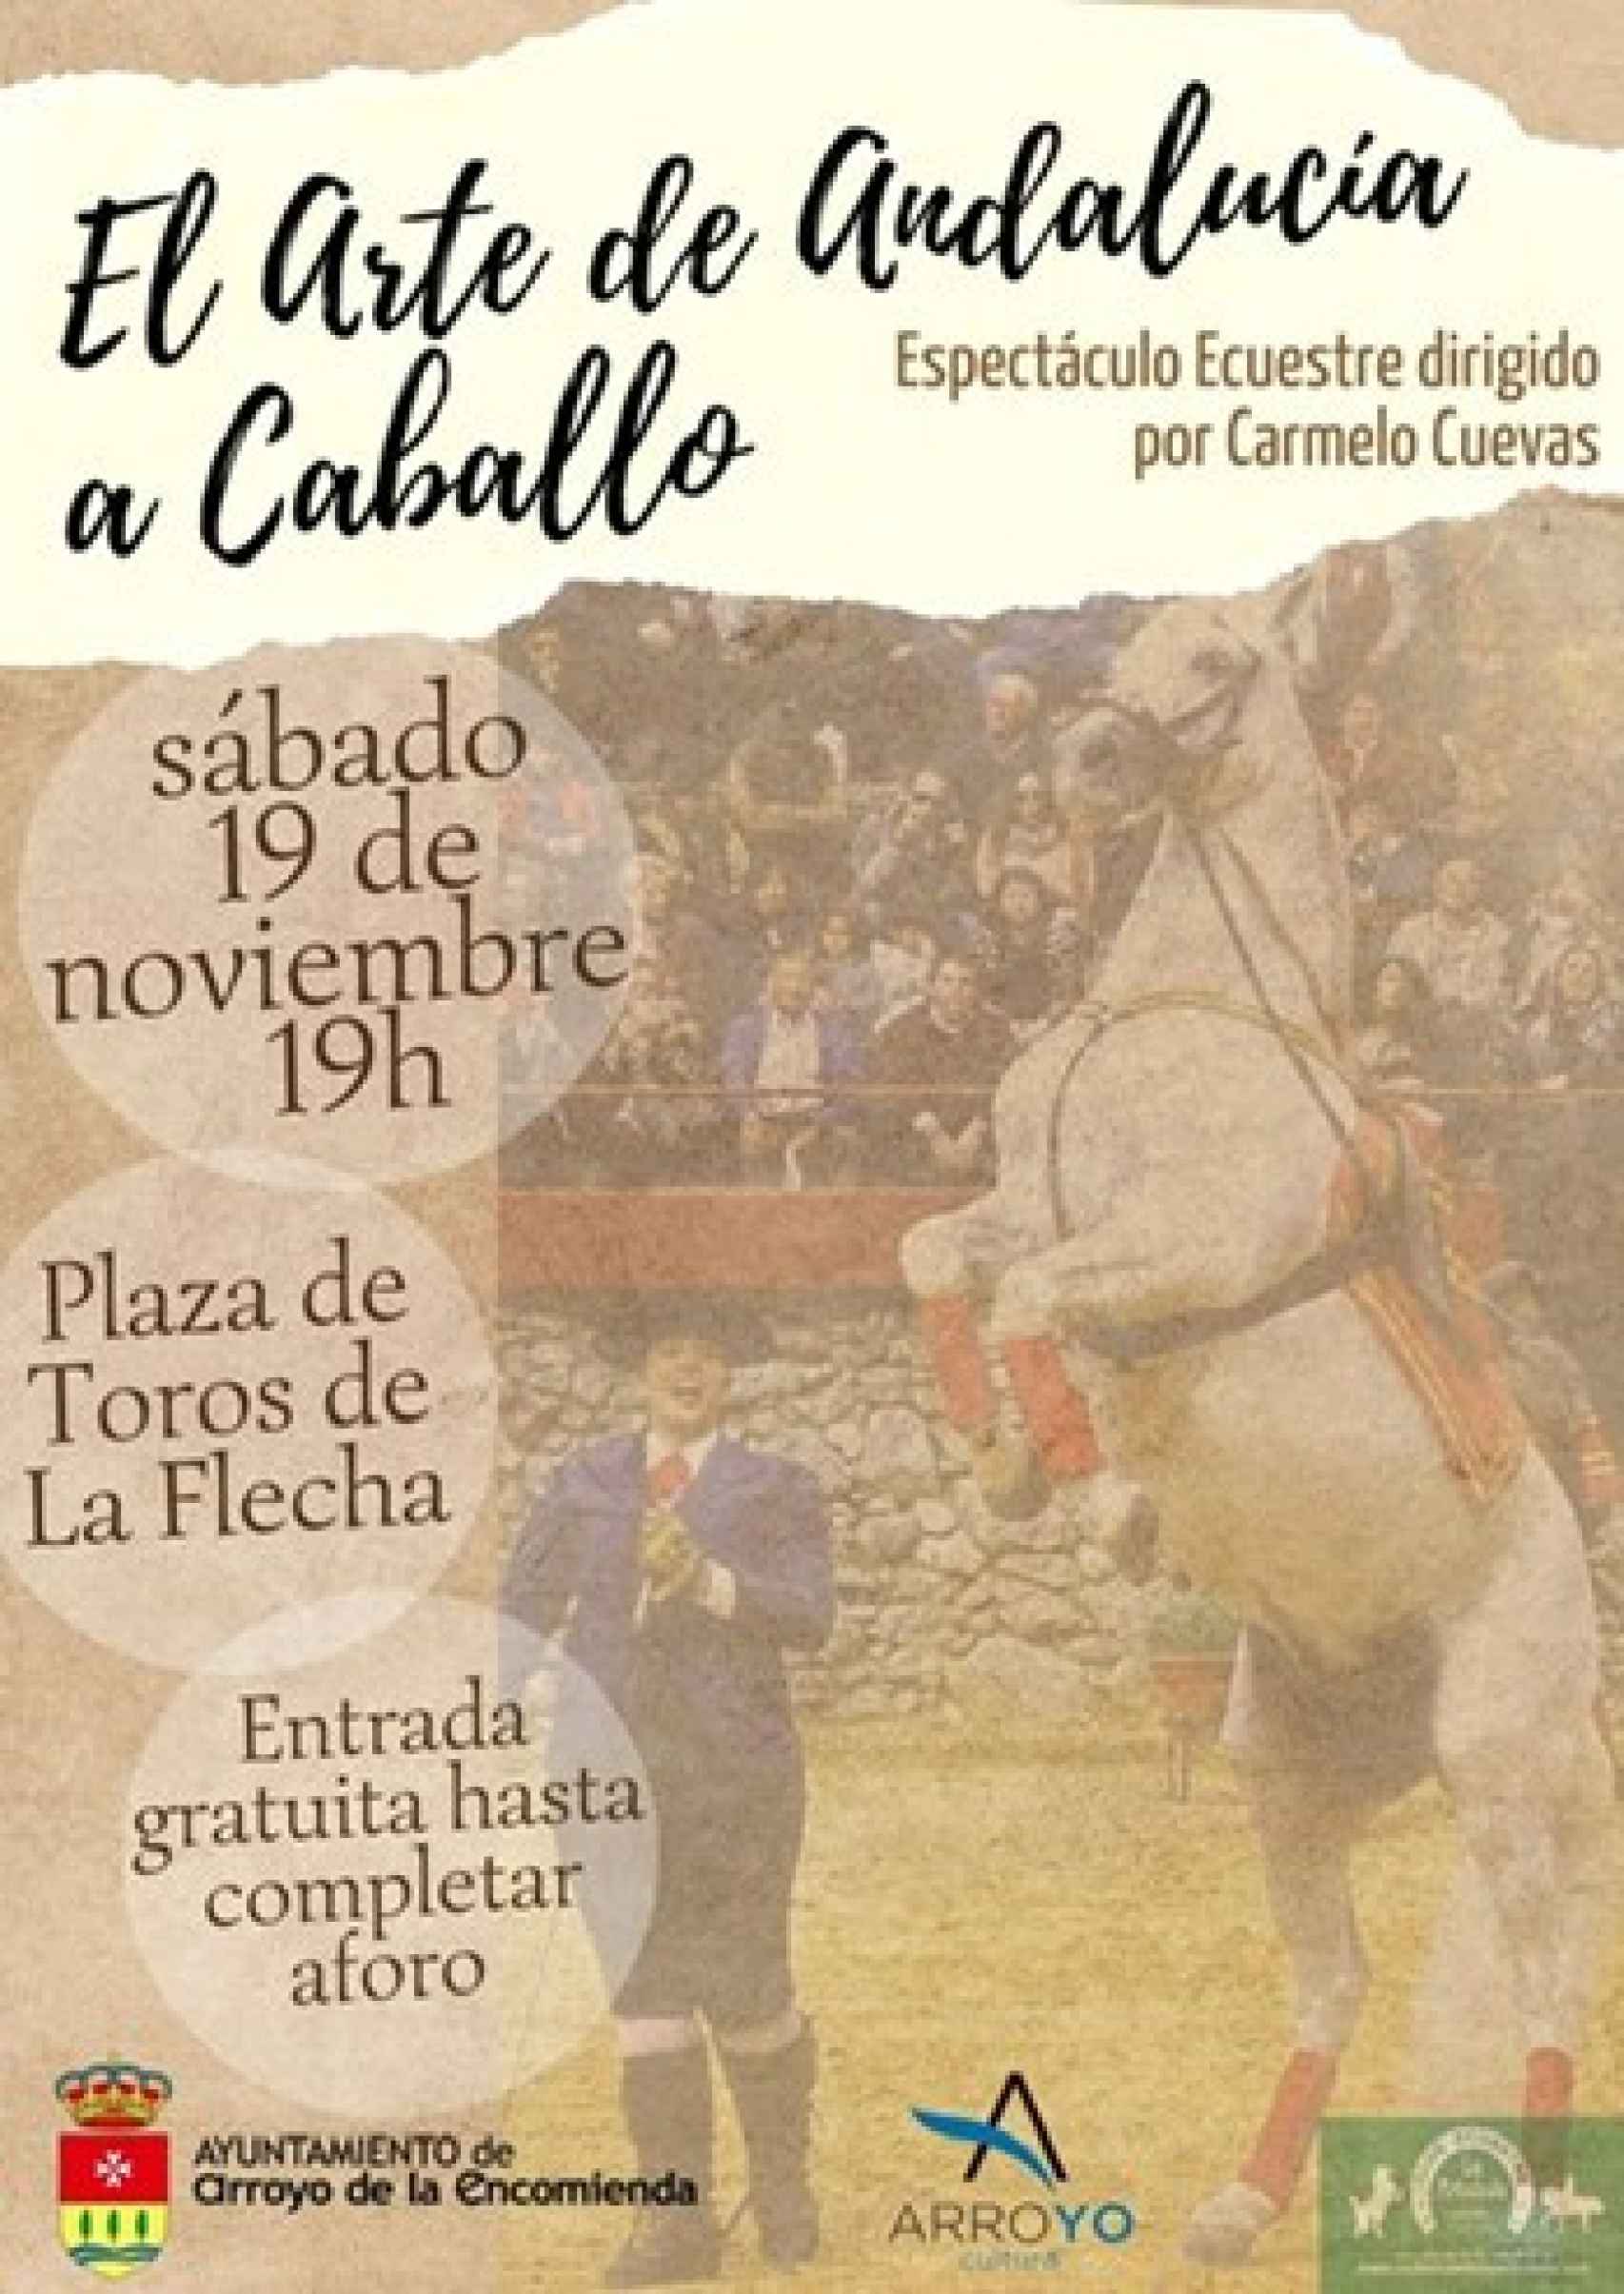 El arte de Andalucía a caballo